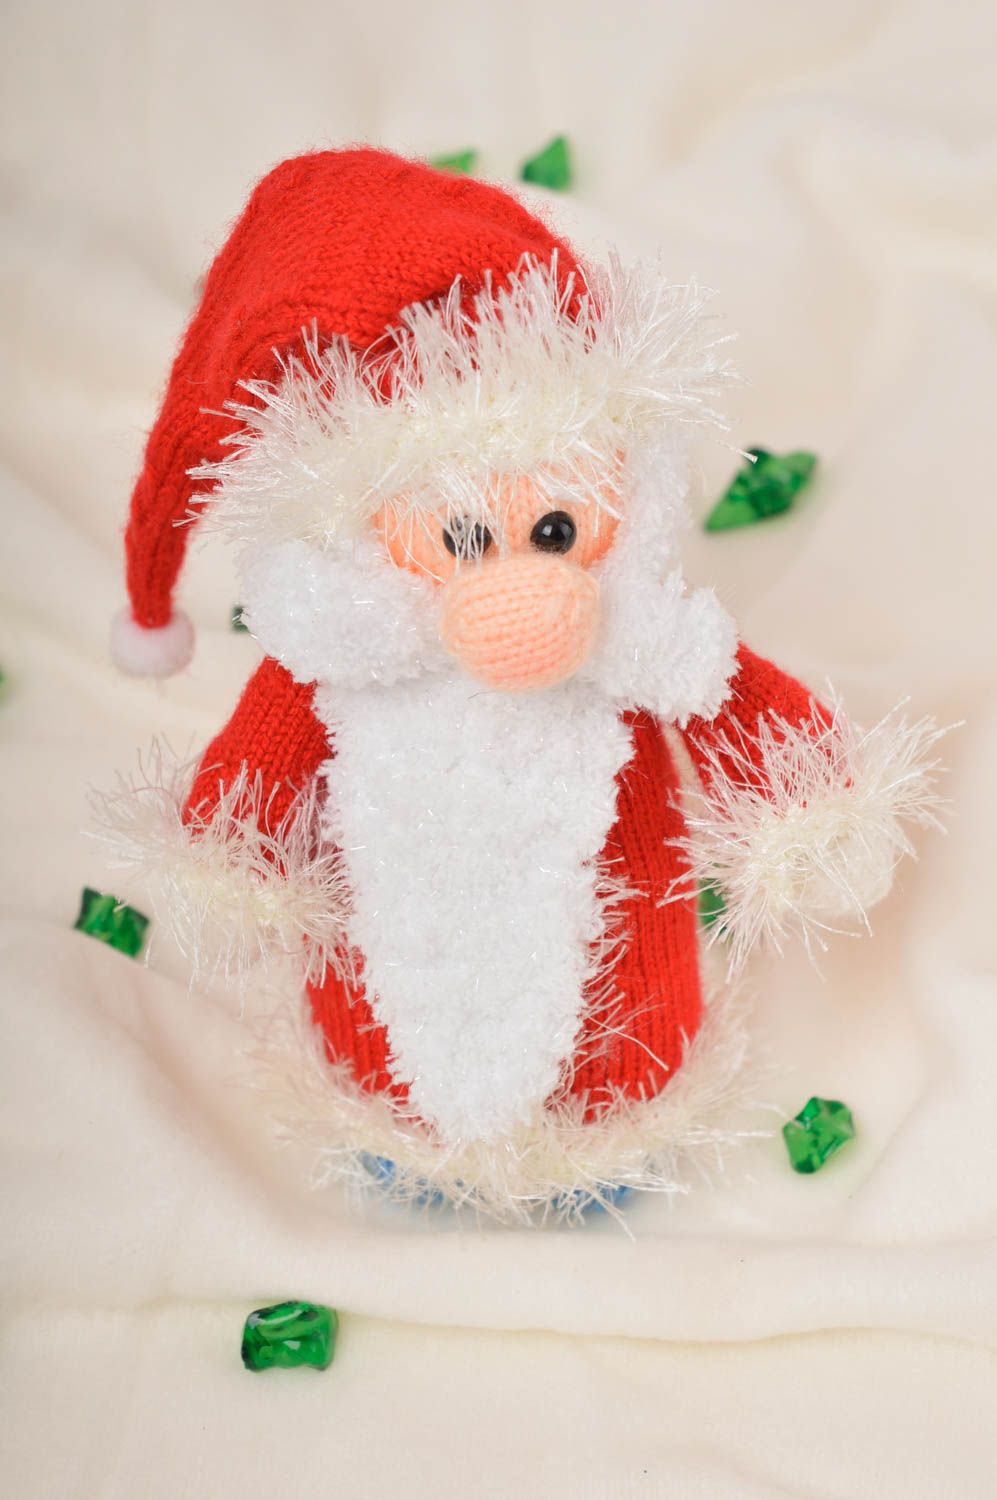 Handmade ausgefallenes Spielzeug Geschenk Idee Weihnachtsmann gehäkelt foto 1